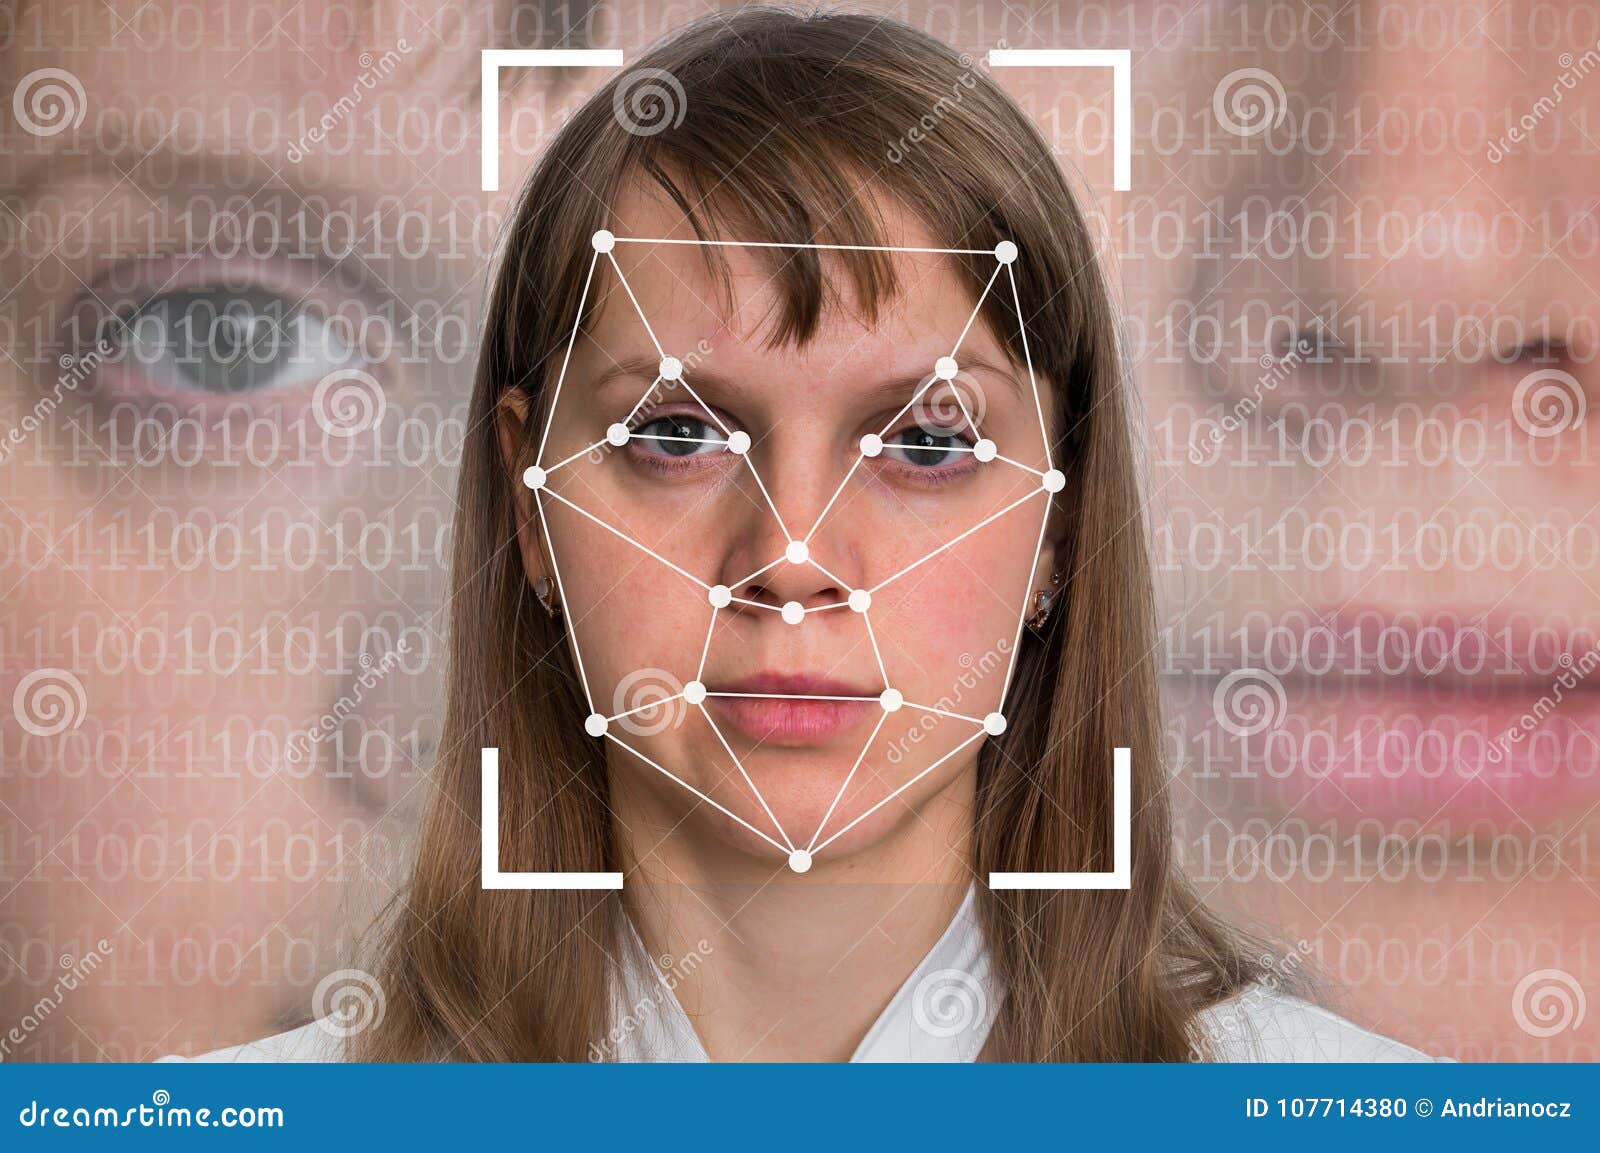 woman face recognition - biometric verification